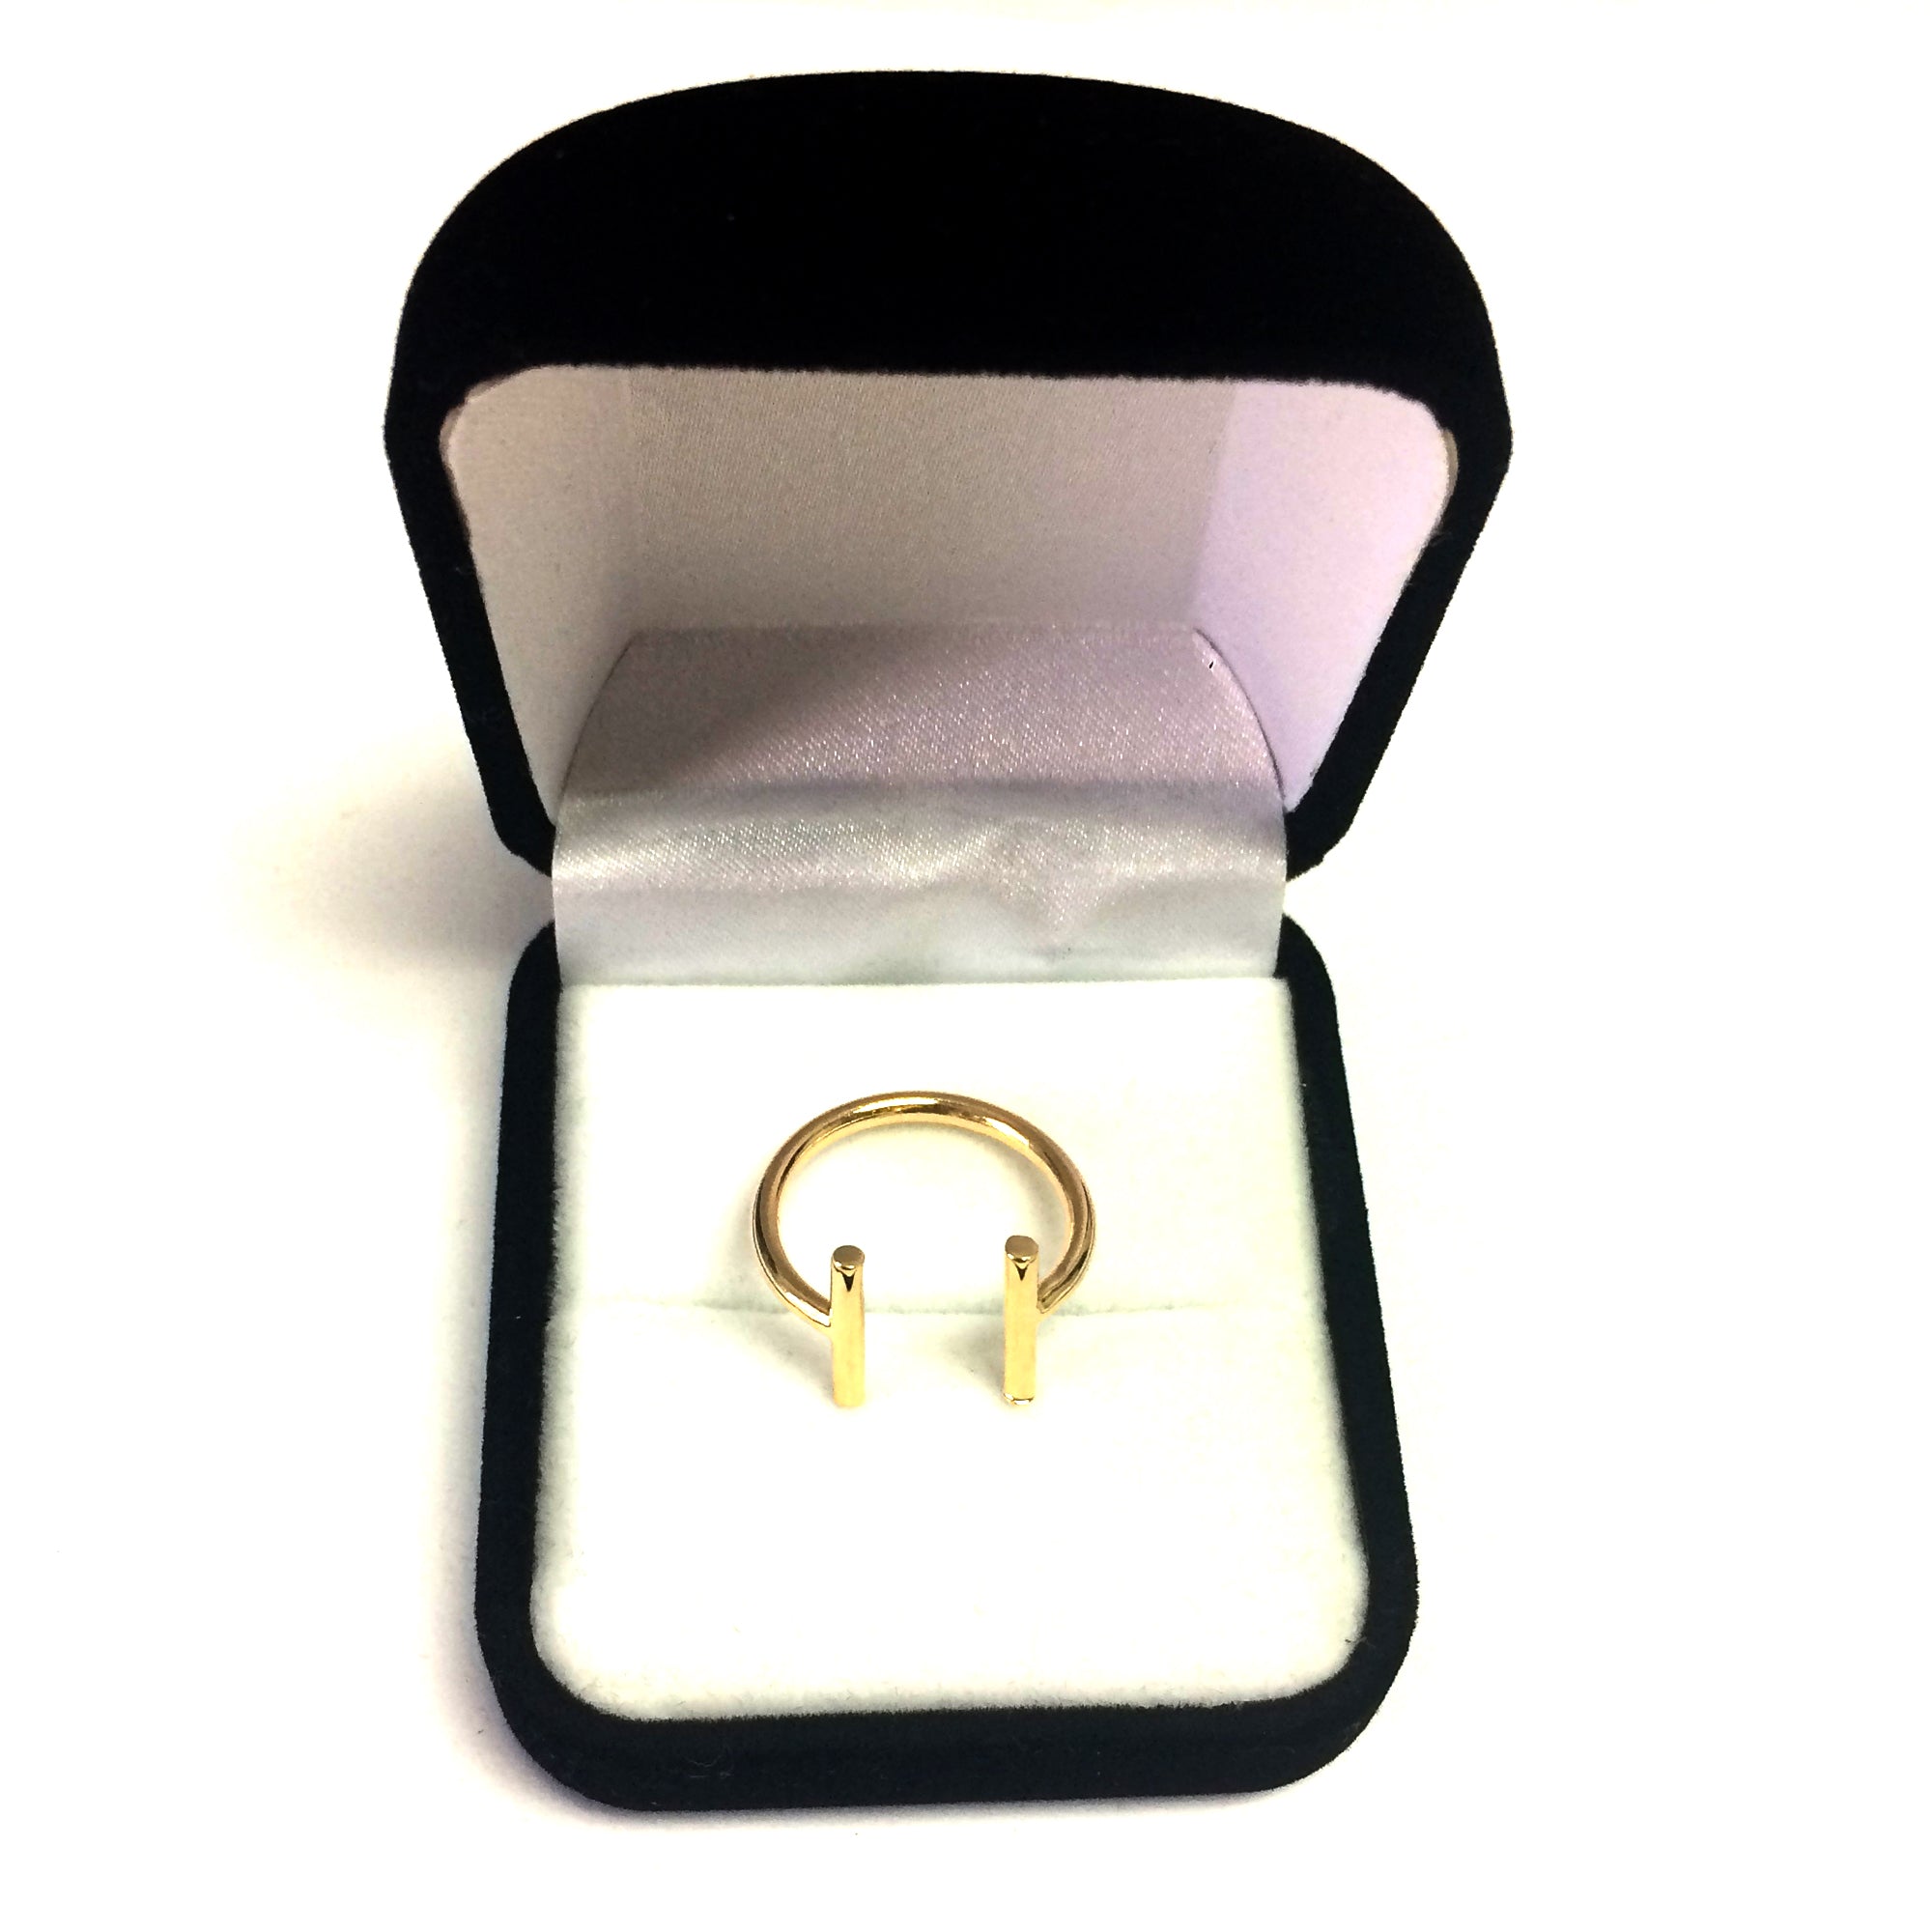 14K gult gull åpen ring med parallelle T-stangender, størrelse 7 fine designersmykker for menn og kvinner